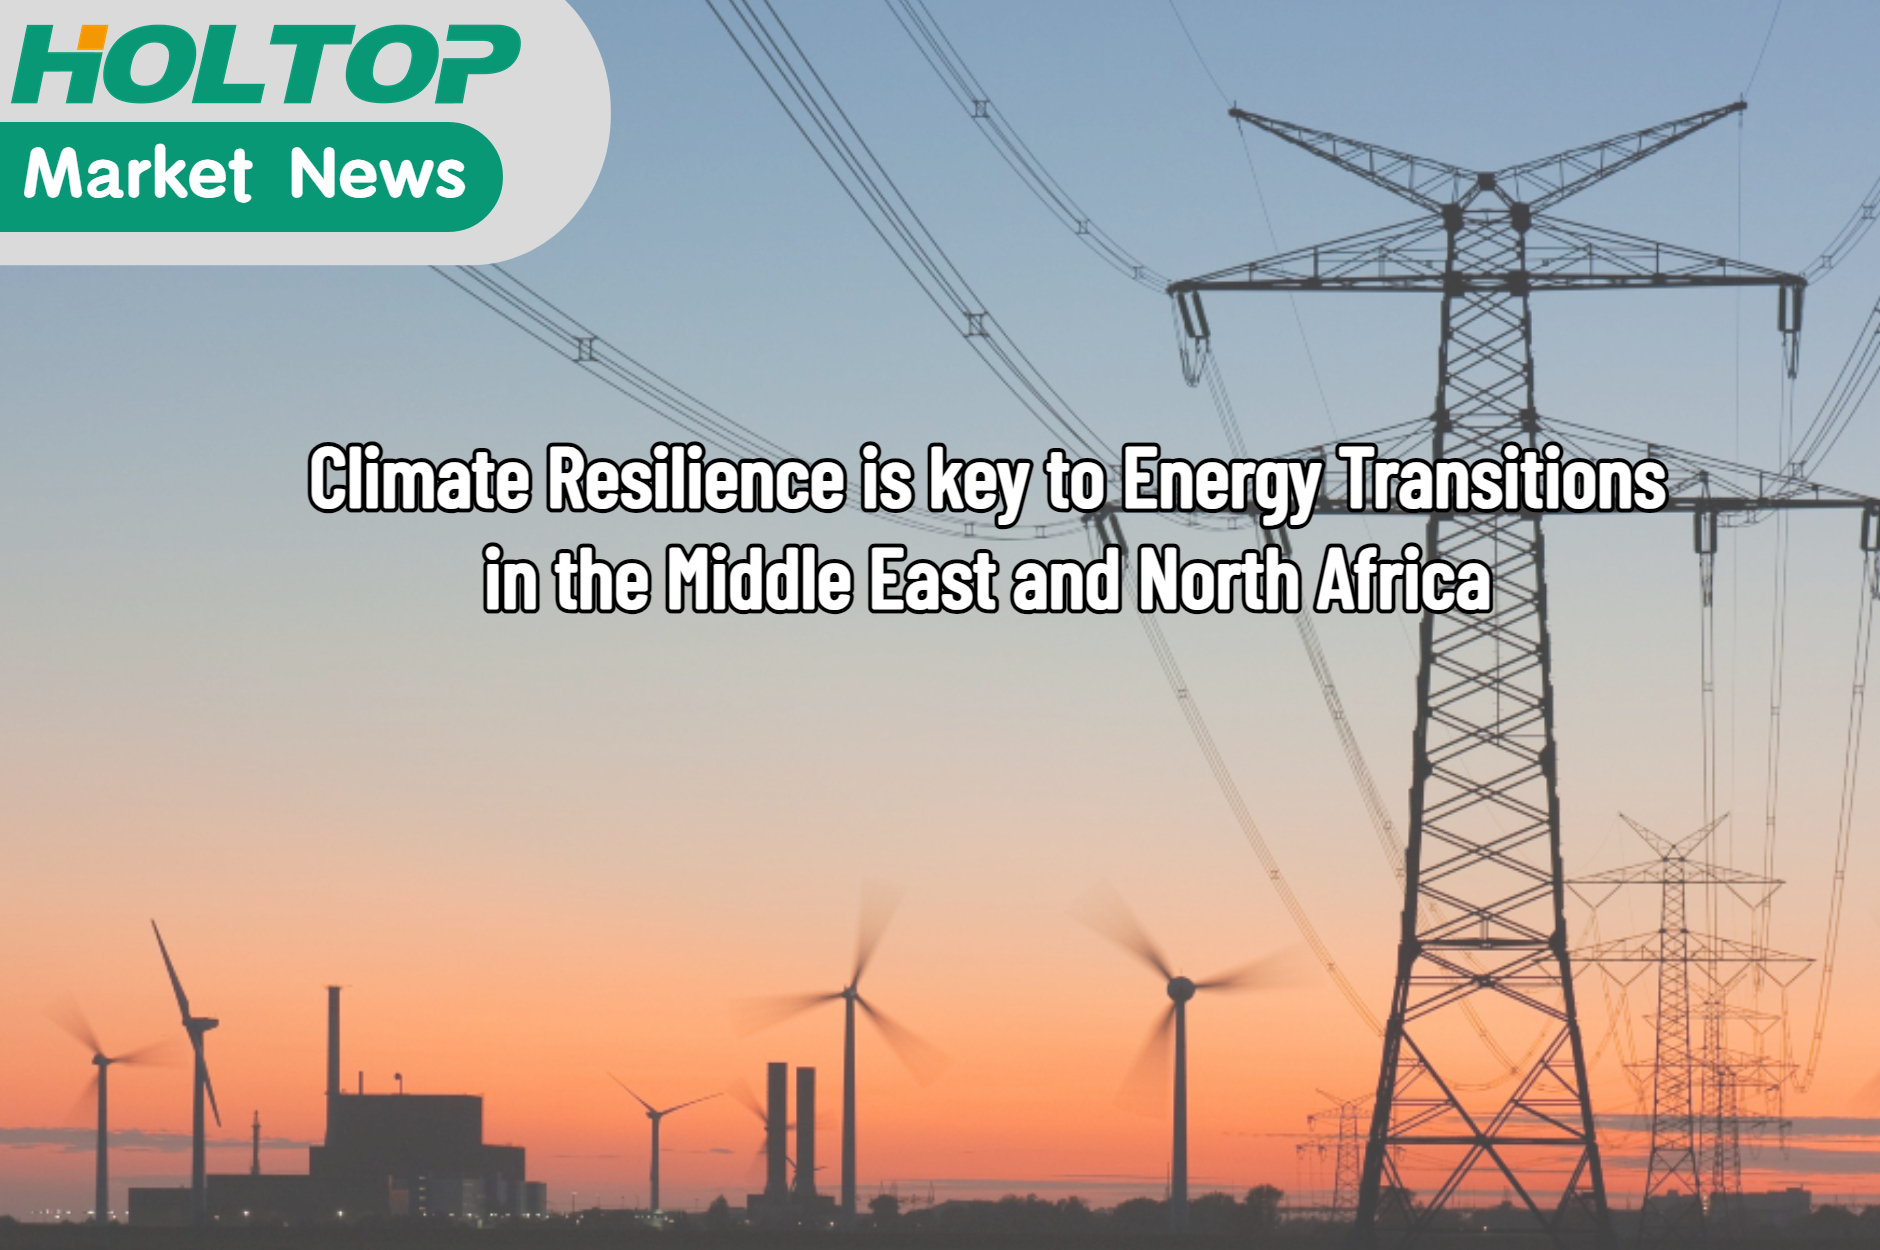 La resiliencia climática es clave para las transiciones energéticas en MENA